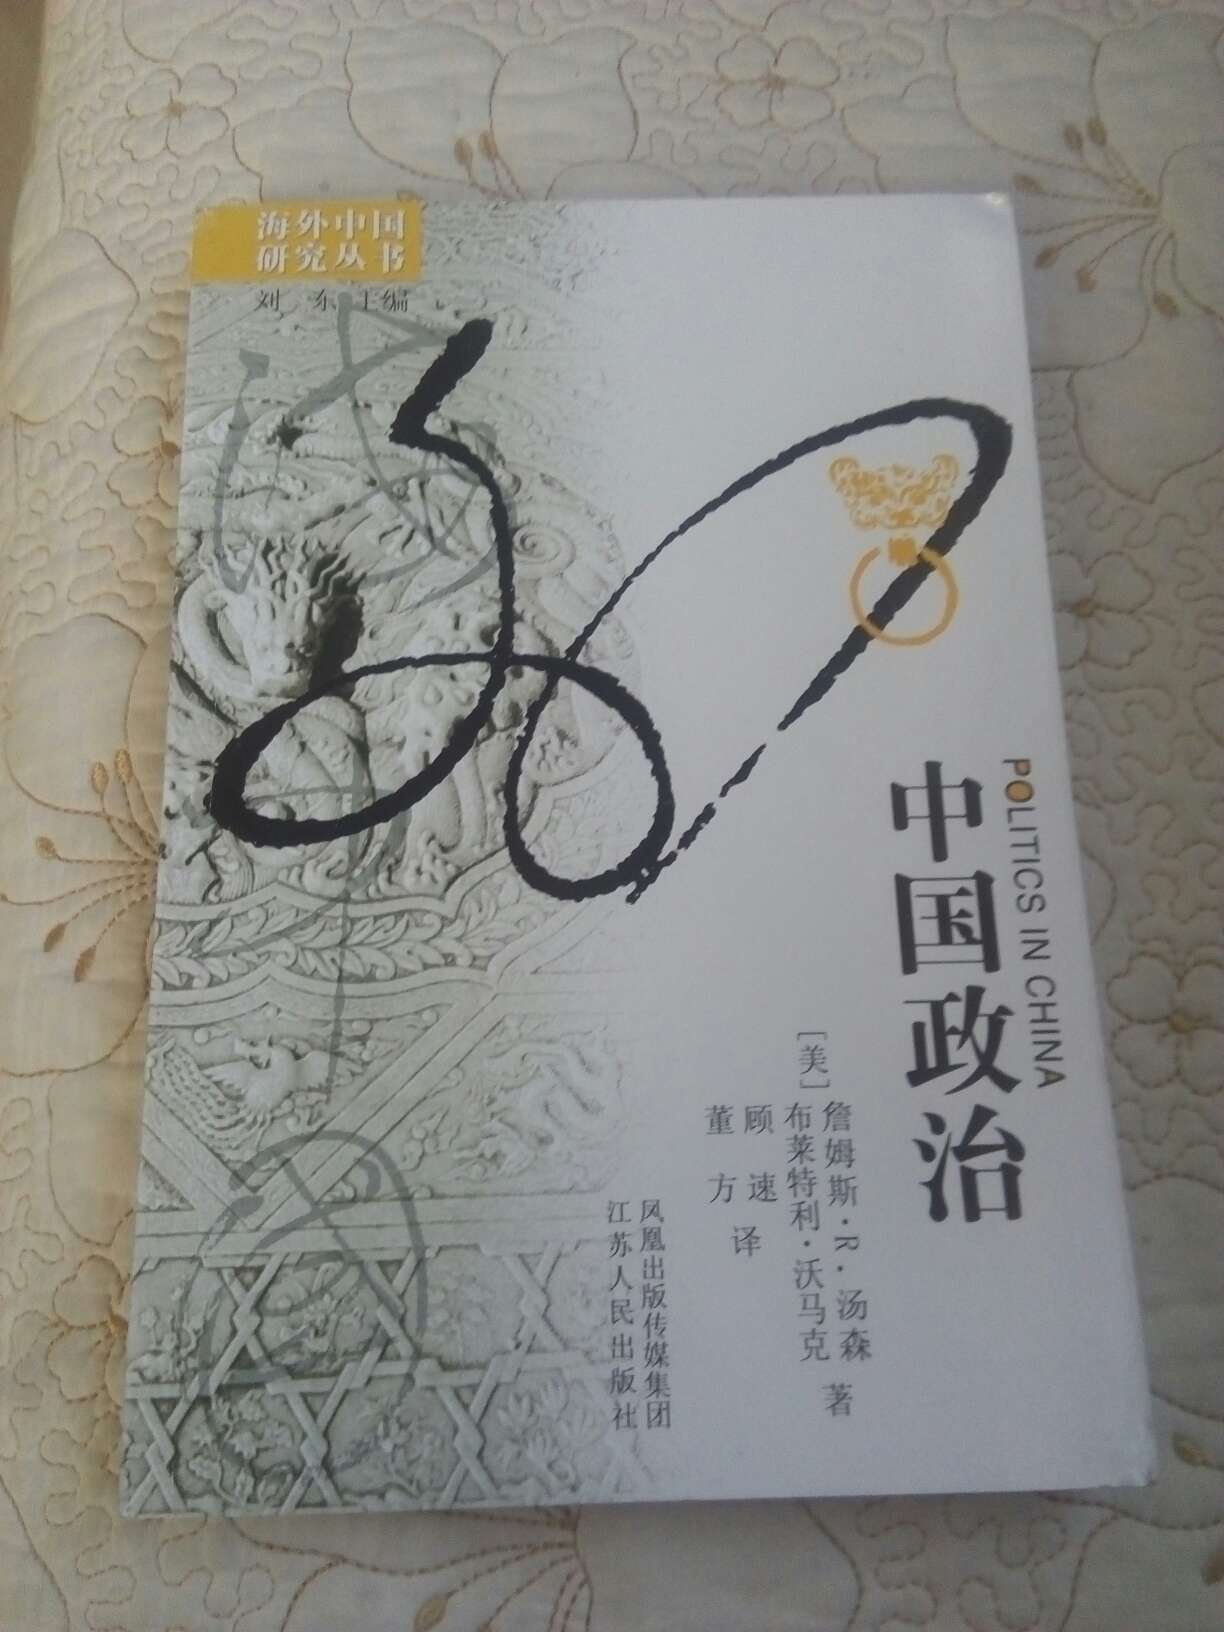 海外中国研究丛书之一，薄薄一本很快就读完了，很耐读。